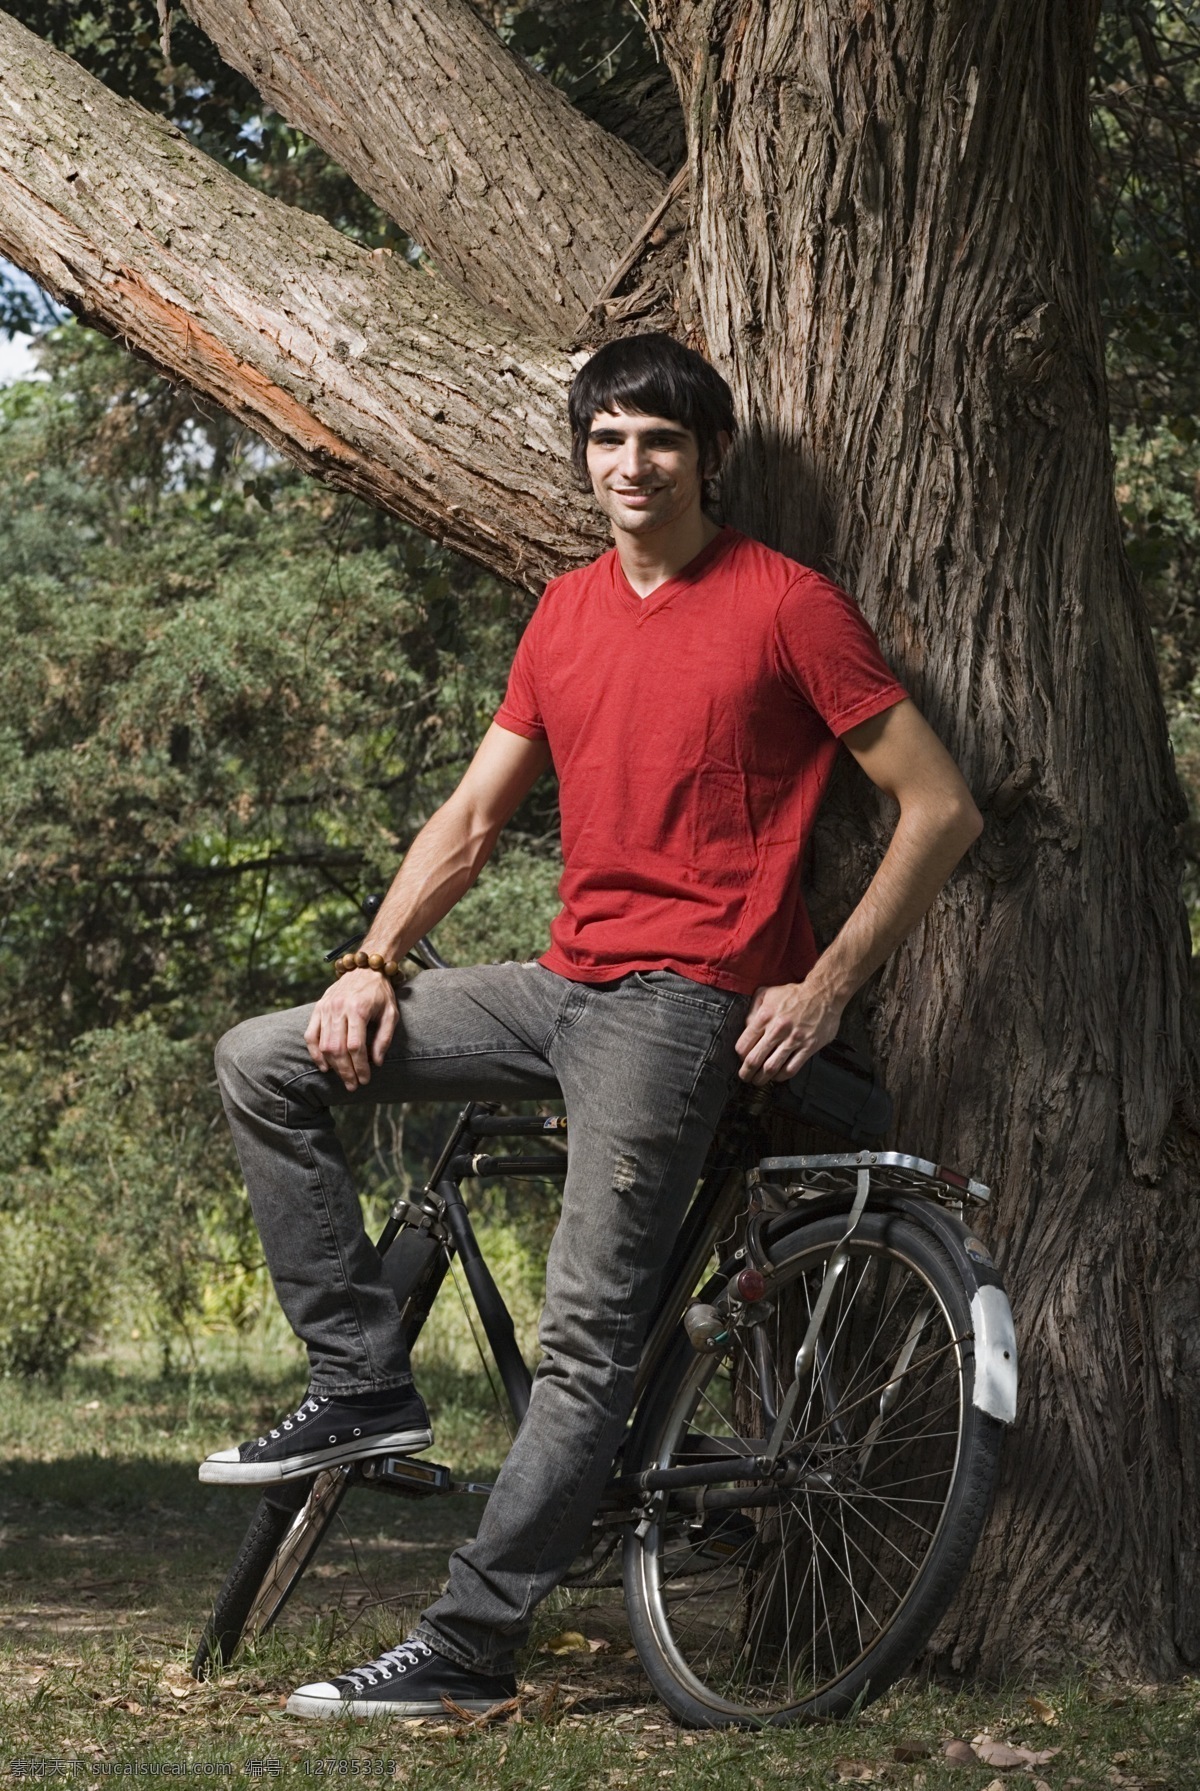 自行车 外国 男生 郊外 户外 放松 草丛 草地 外国男生 自行车与男人 大树 年轻男孩 微笑男生 男人图片 人物图片